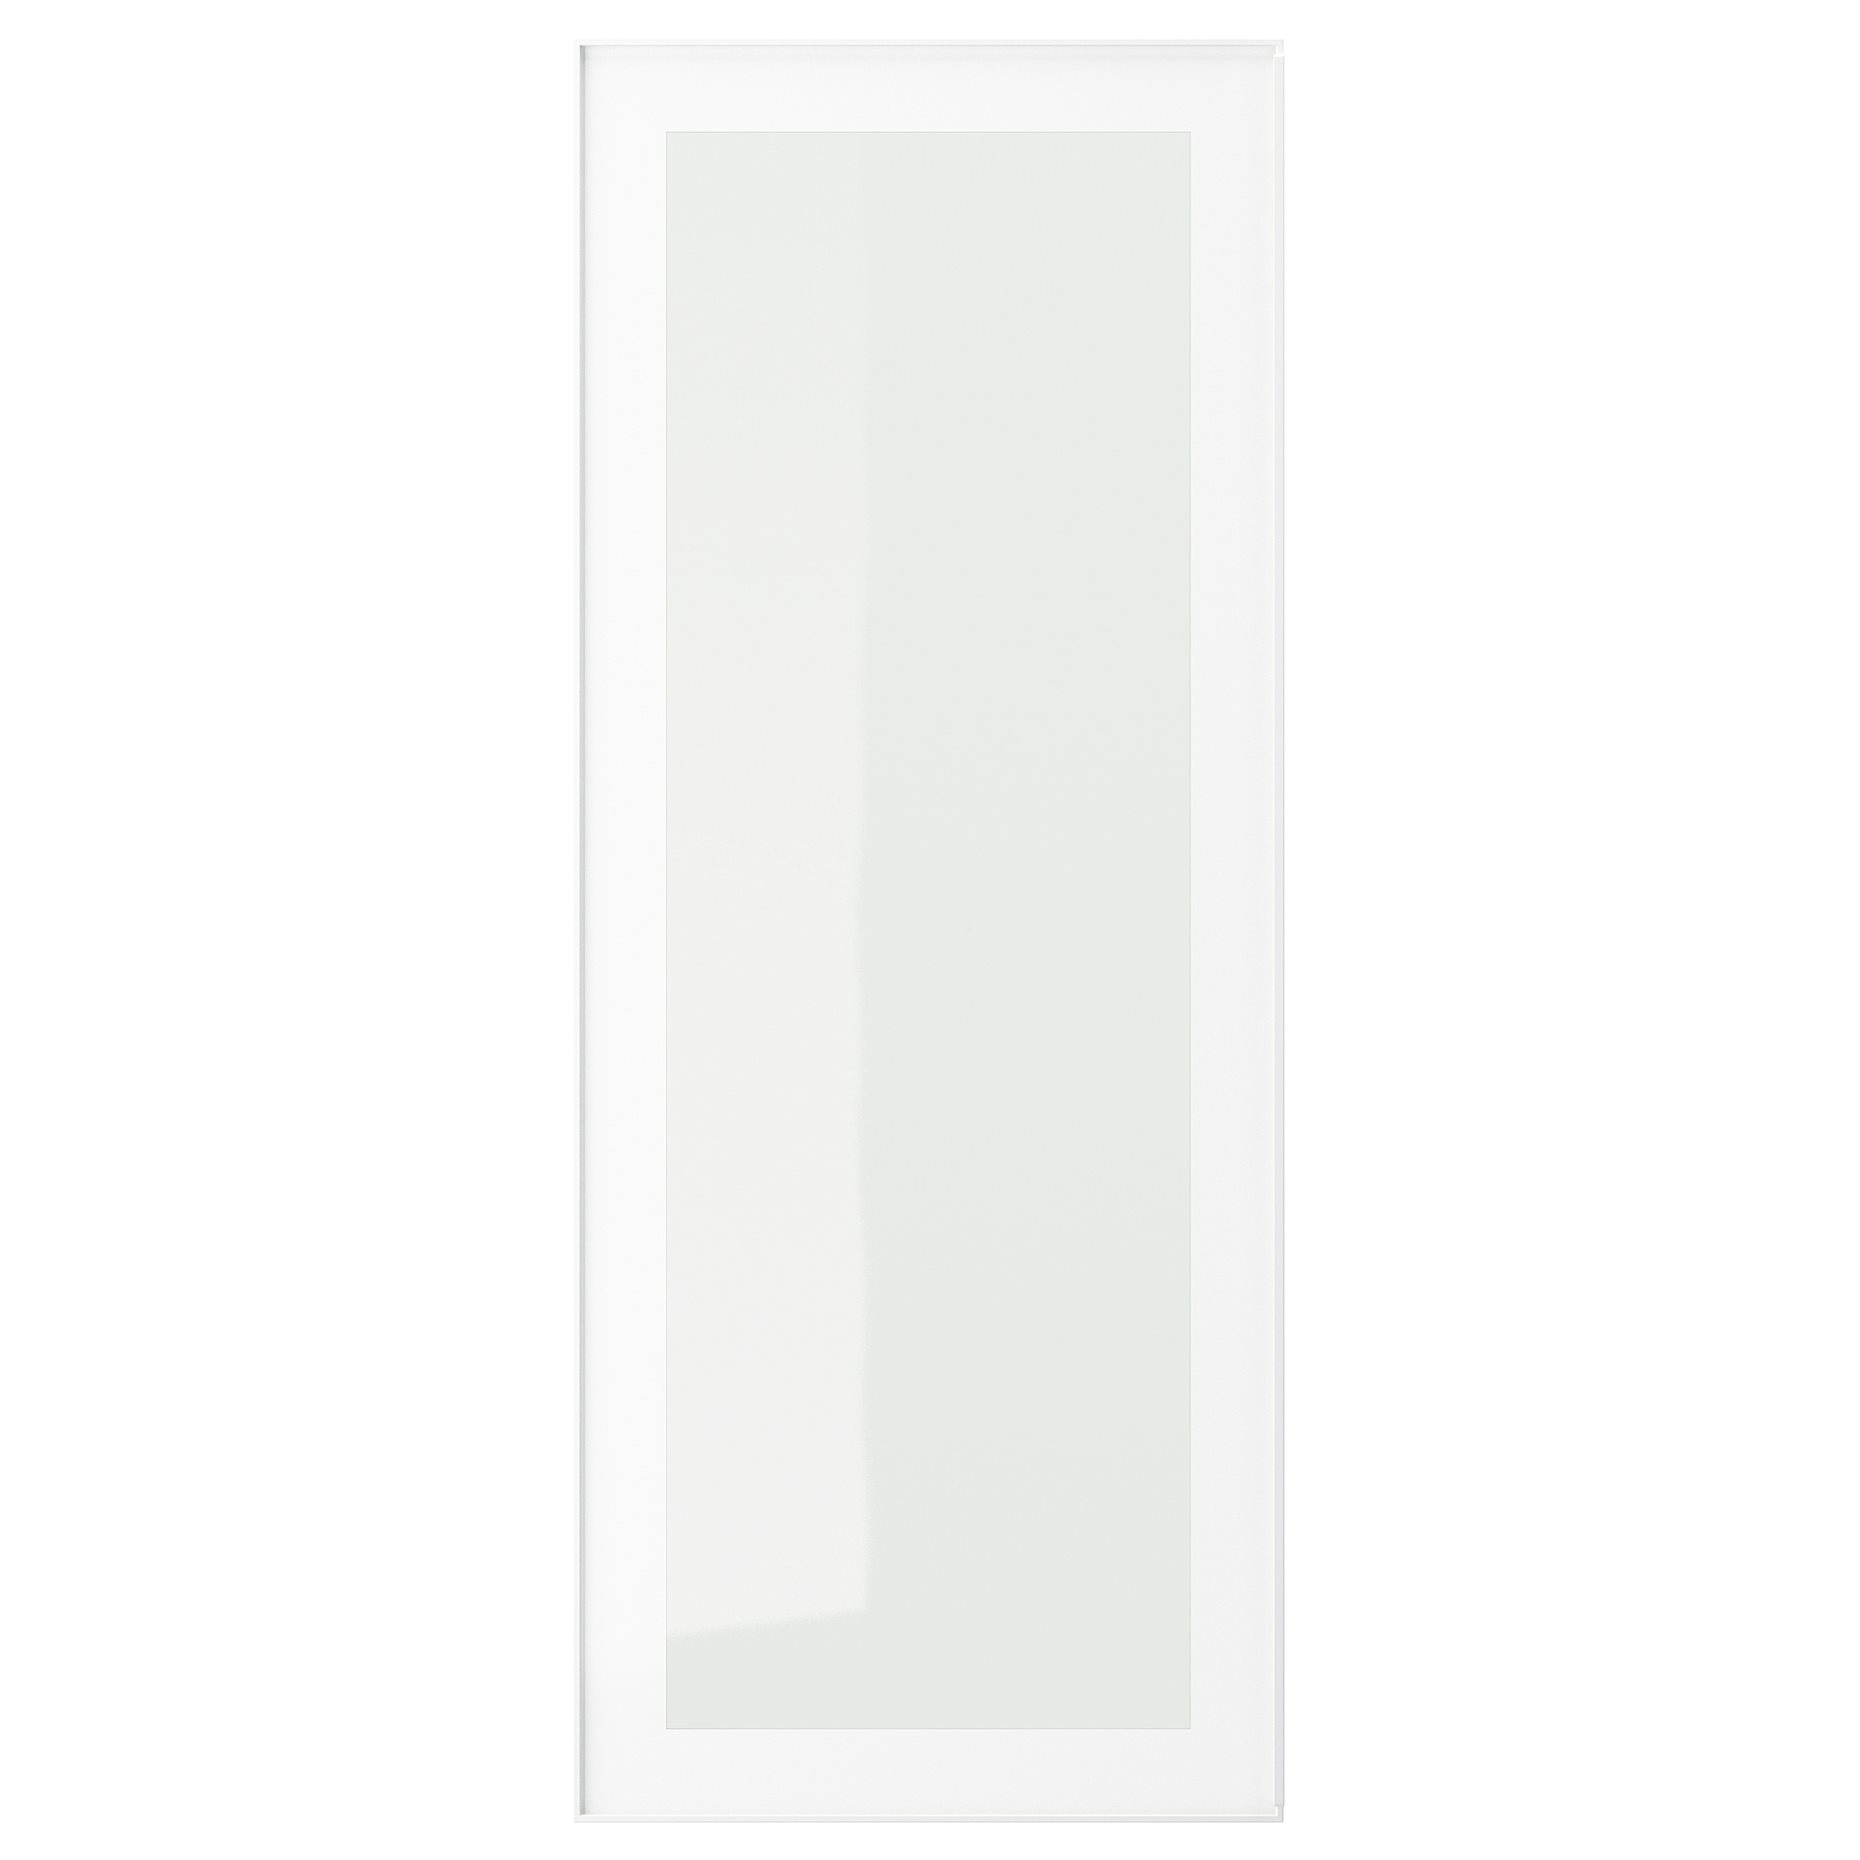 HEJSTA, glass door, 40x100 cm, 805.266.35